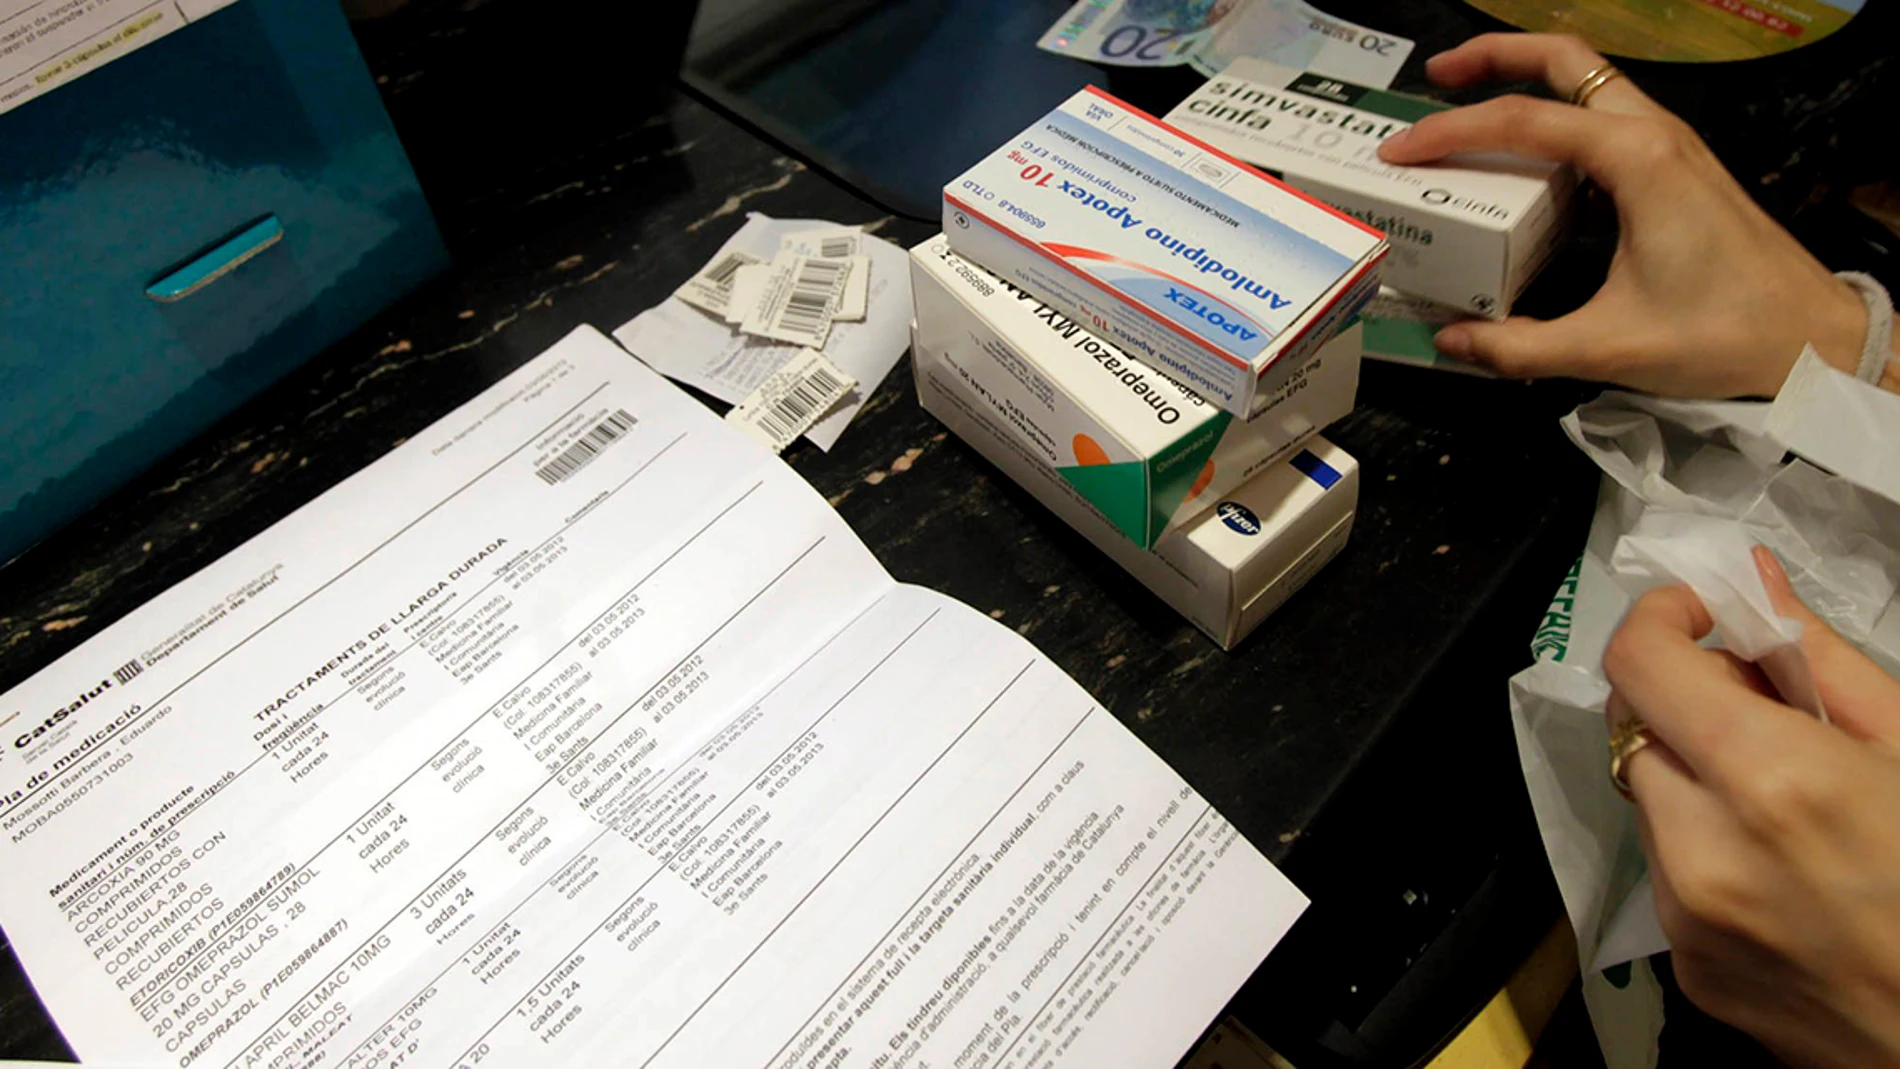 Una persona adquiere varios fármacos en una farmacia de Barcelona. EFE/Archivo